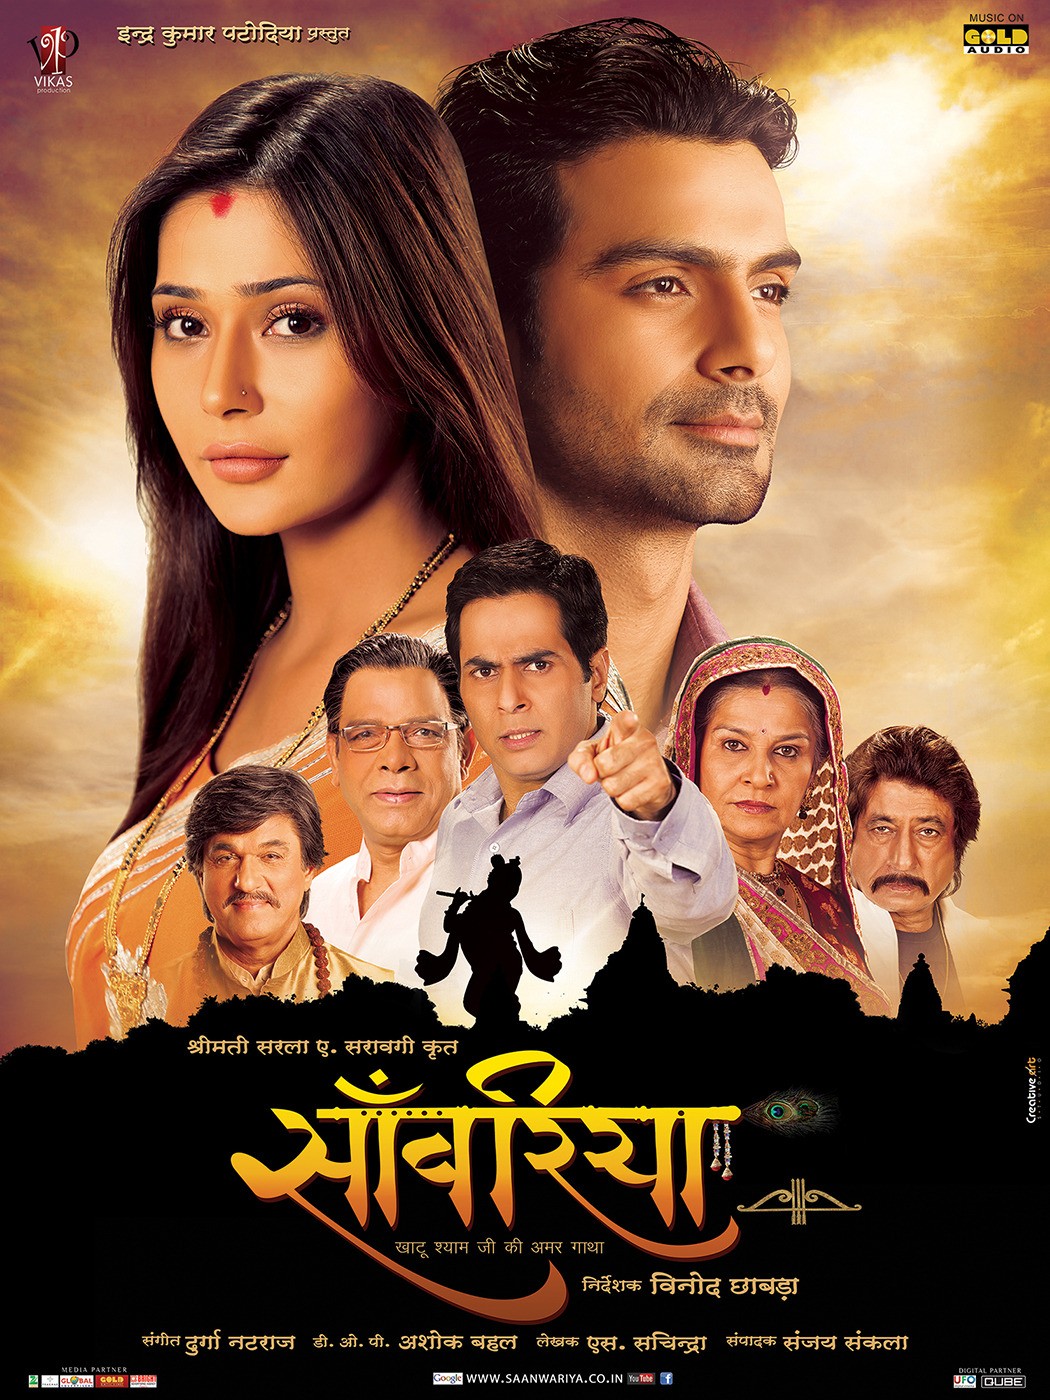 Extra Large Movie Poster Image for Saanwariya - Khatu Shyam Ji Ki Amar Gatha (#6 of 11)